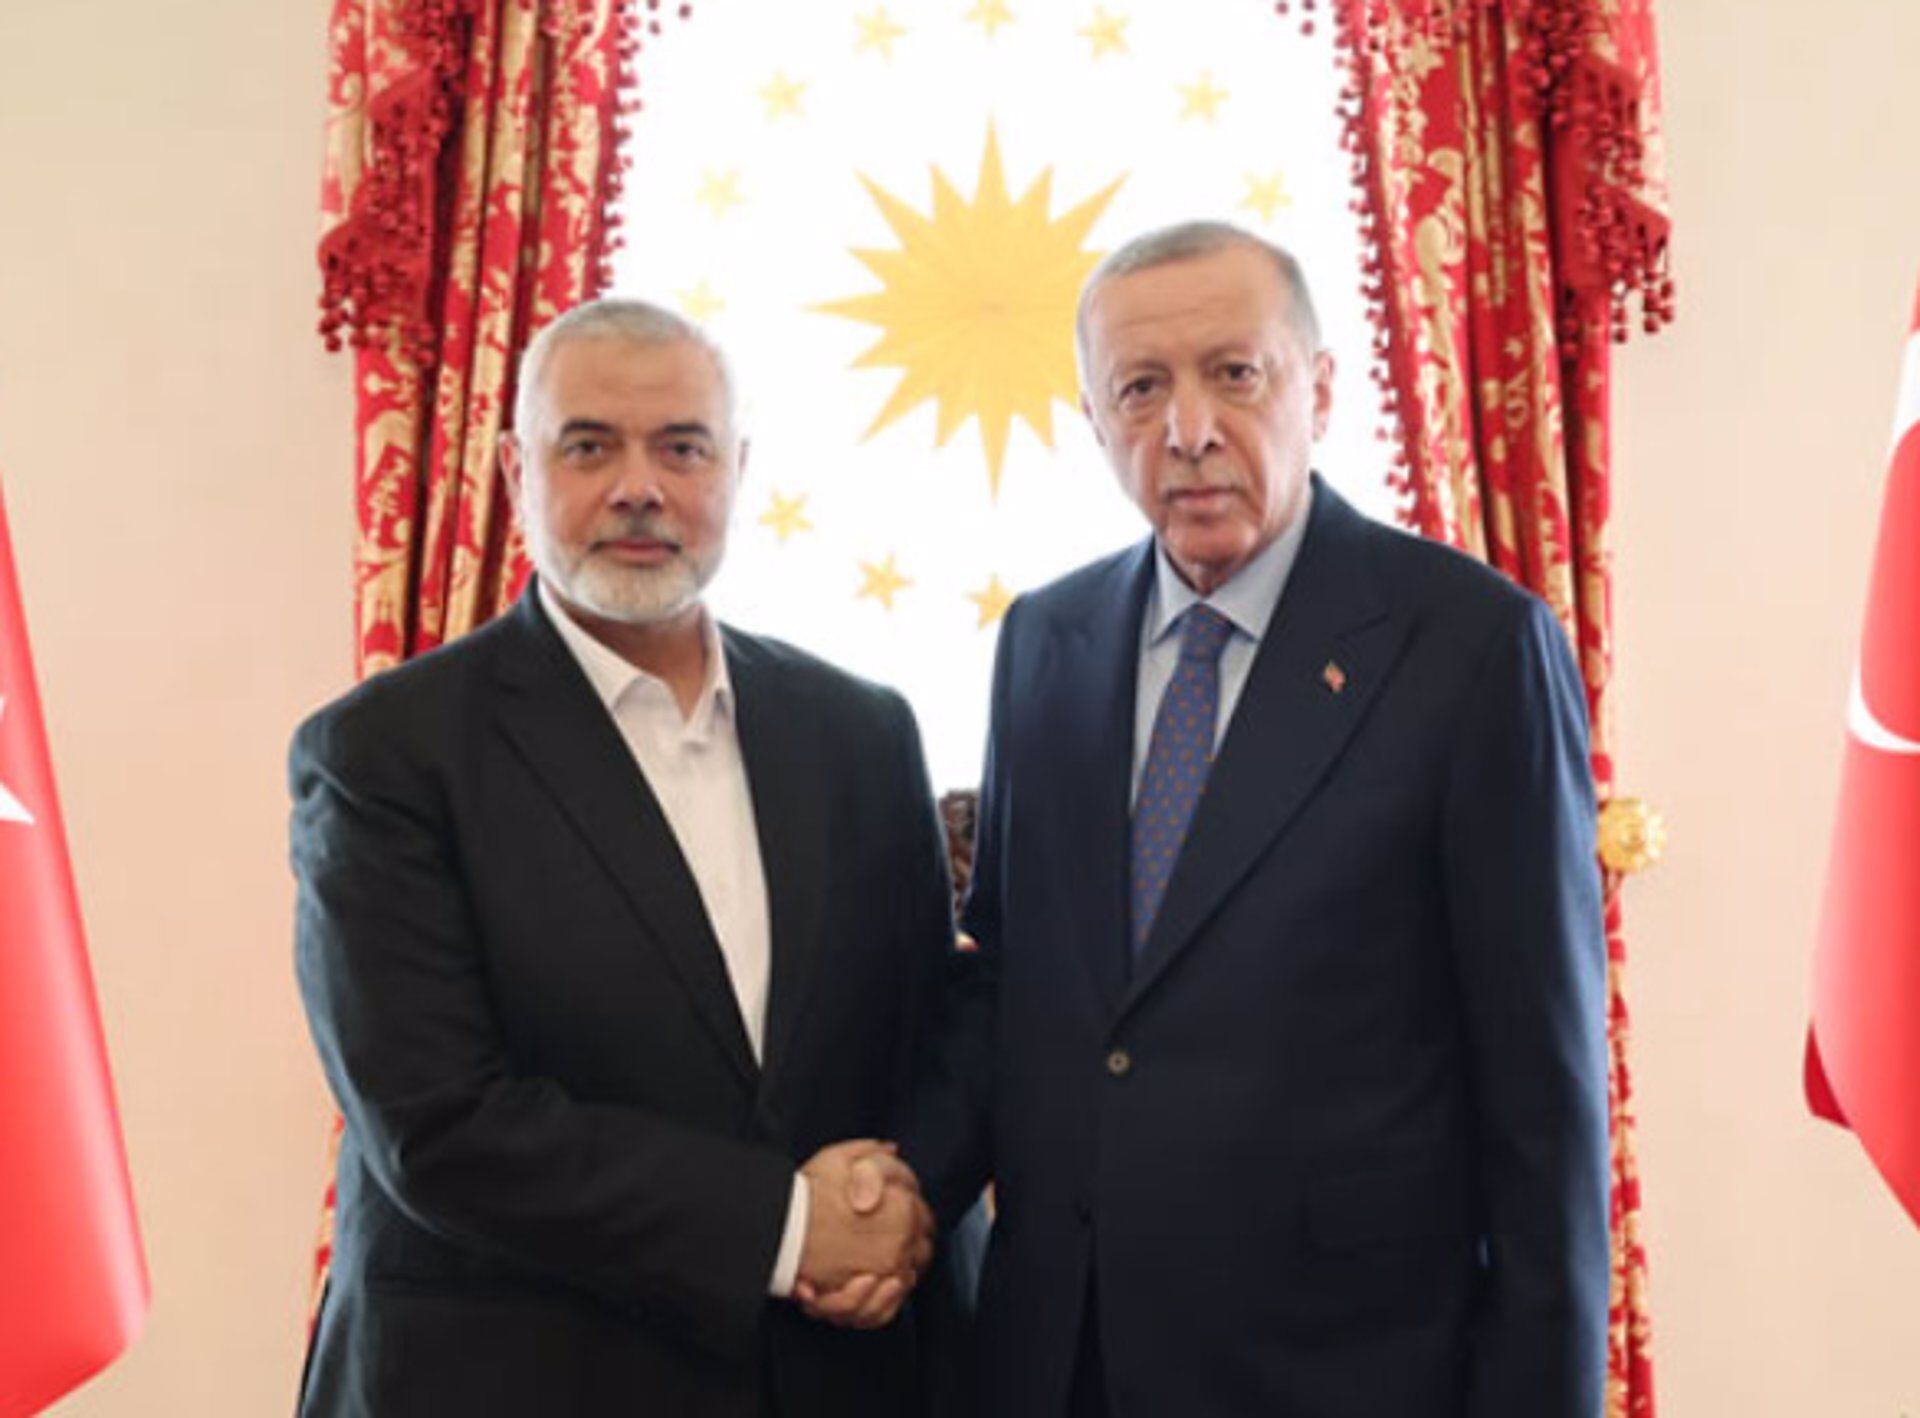 Durante su reunión con el Jefe de Hamas, Erdogan advirtió que Israel “pagará el precio” de sus acciones en Gaza (Europa Press)